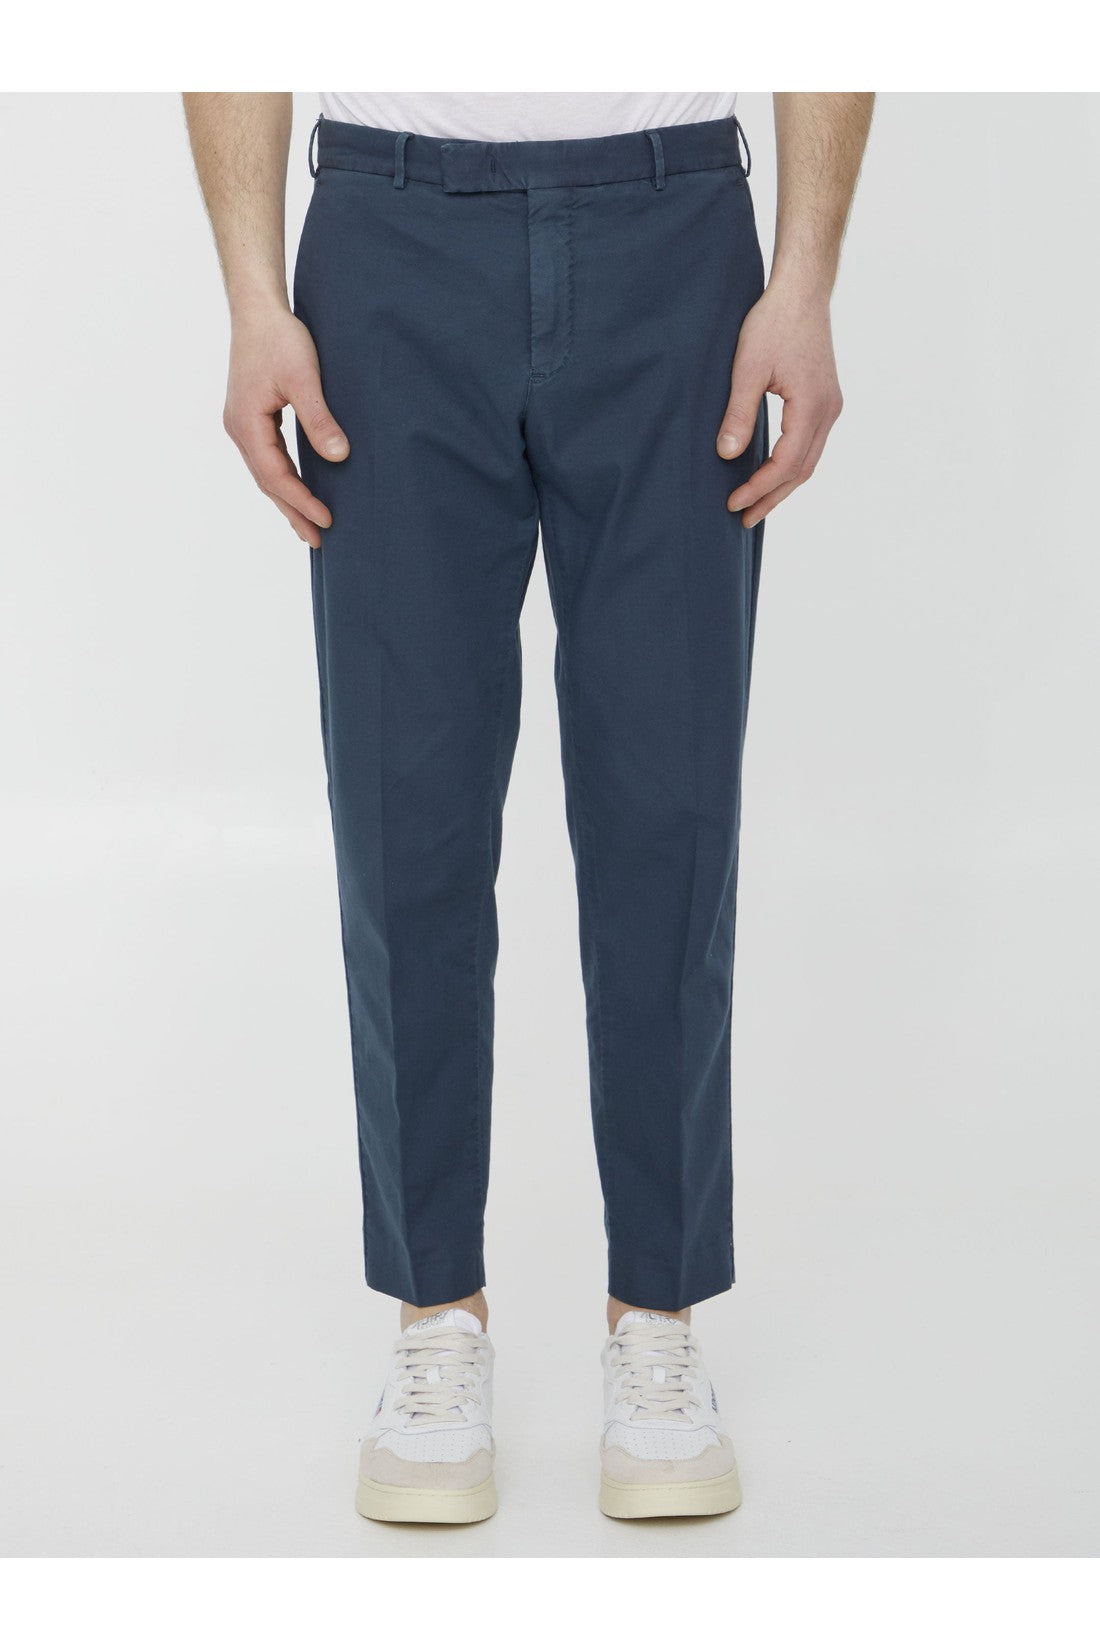 Blue cotton trousers